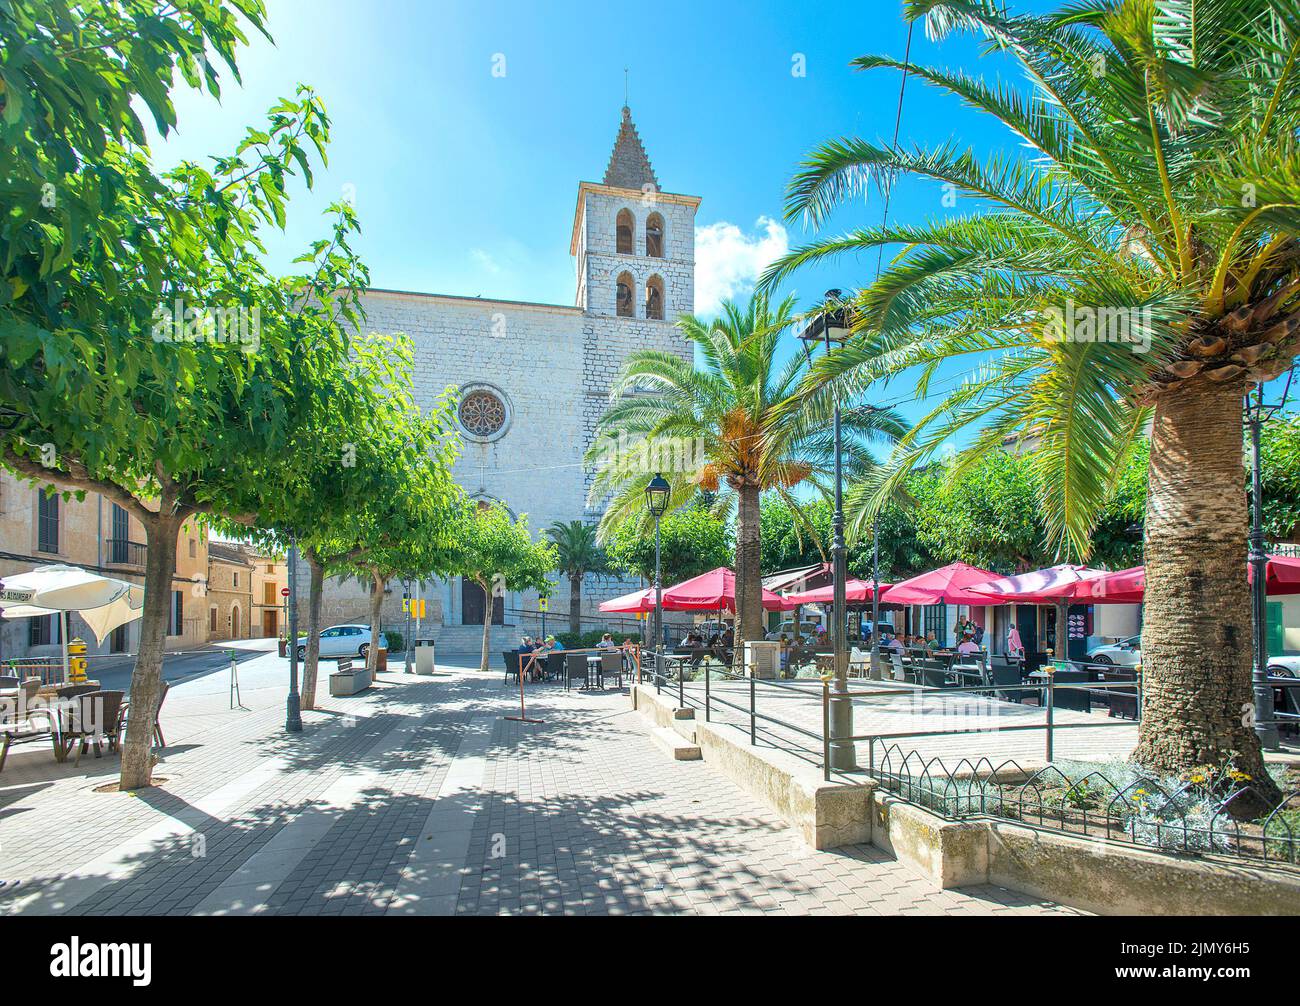 Campanet, Majorca, Balearics, Spain Stock Photo